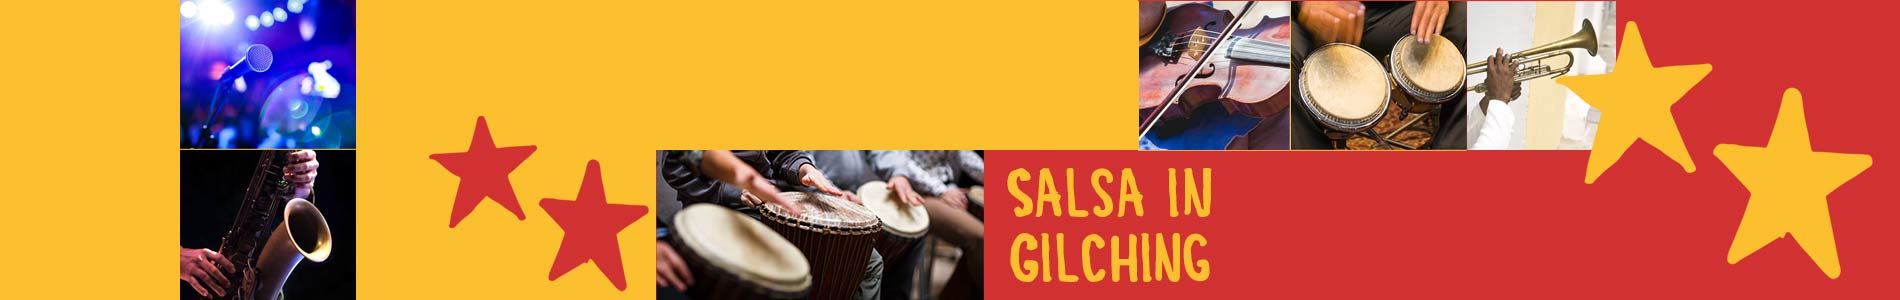 Salsa in Gilching – Salsa lernen und tanzen, Tanzkurse, Partys, Veranstaltungen